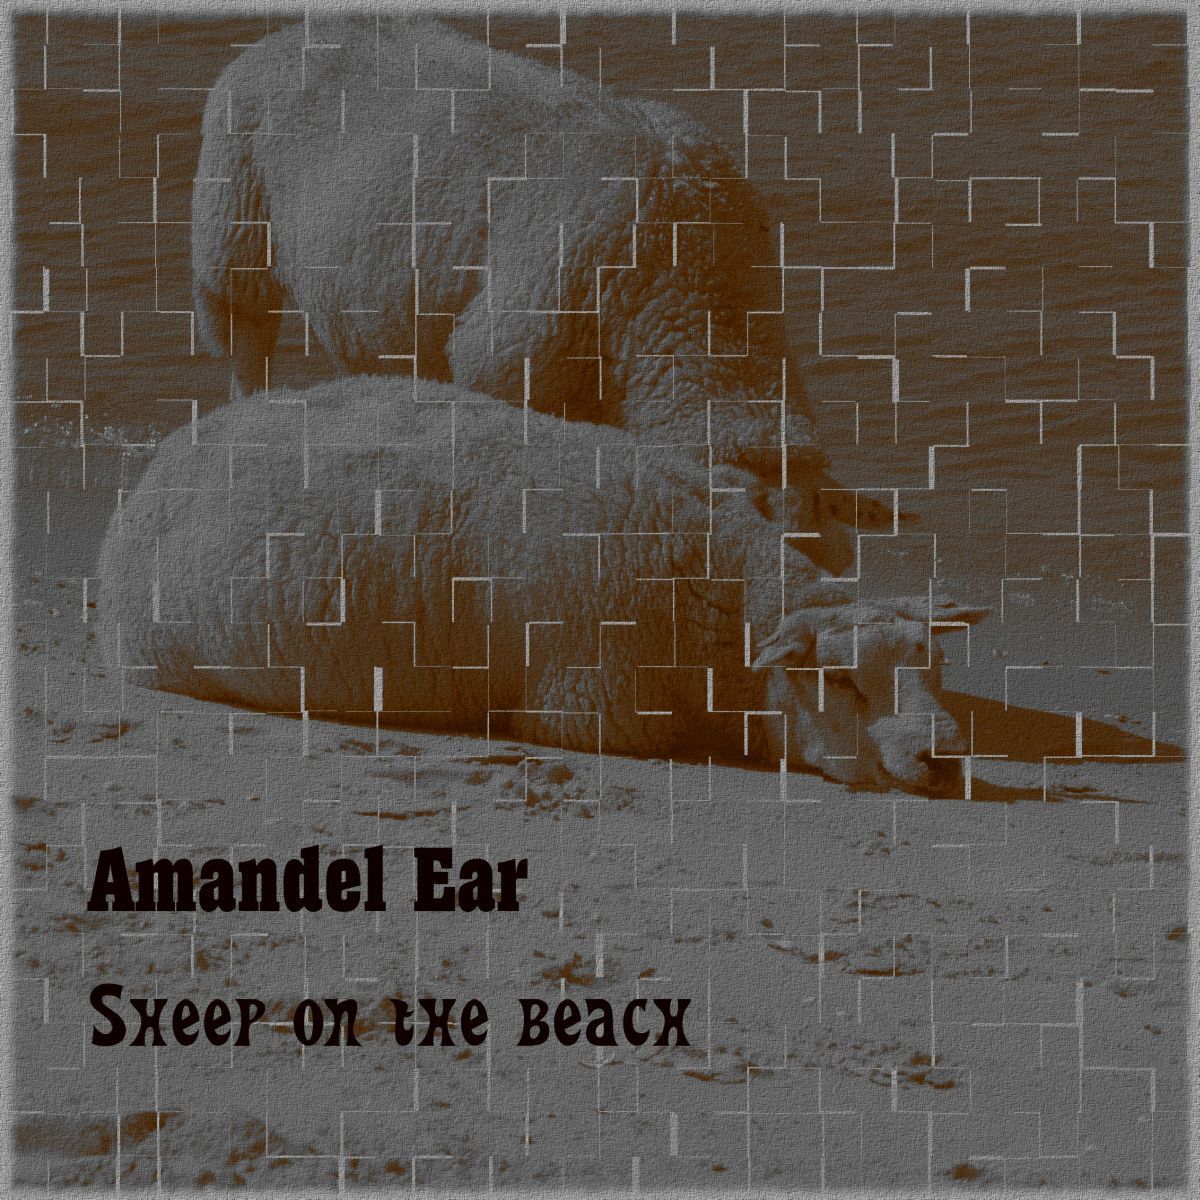 Amandel Ear-Sheep on the beach